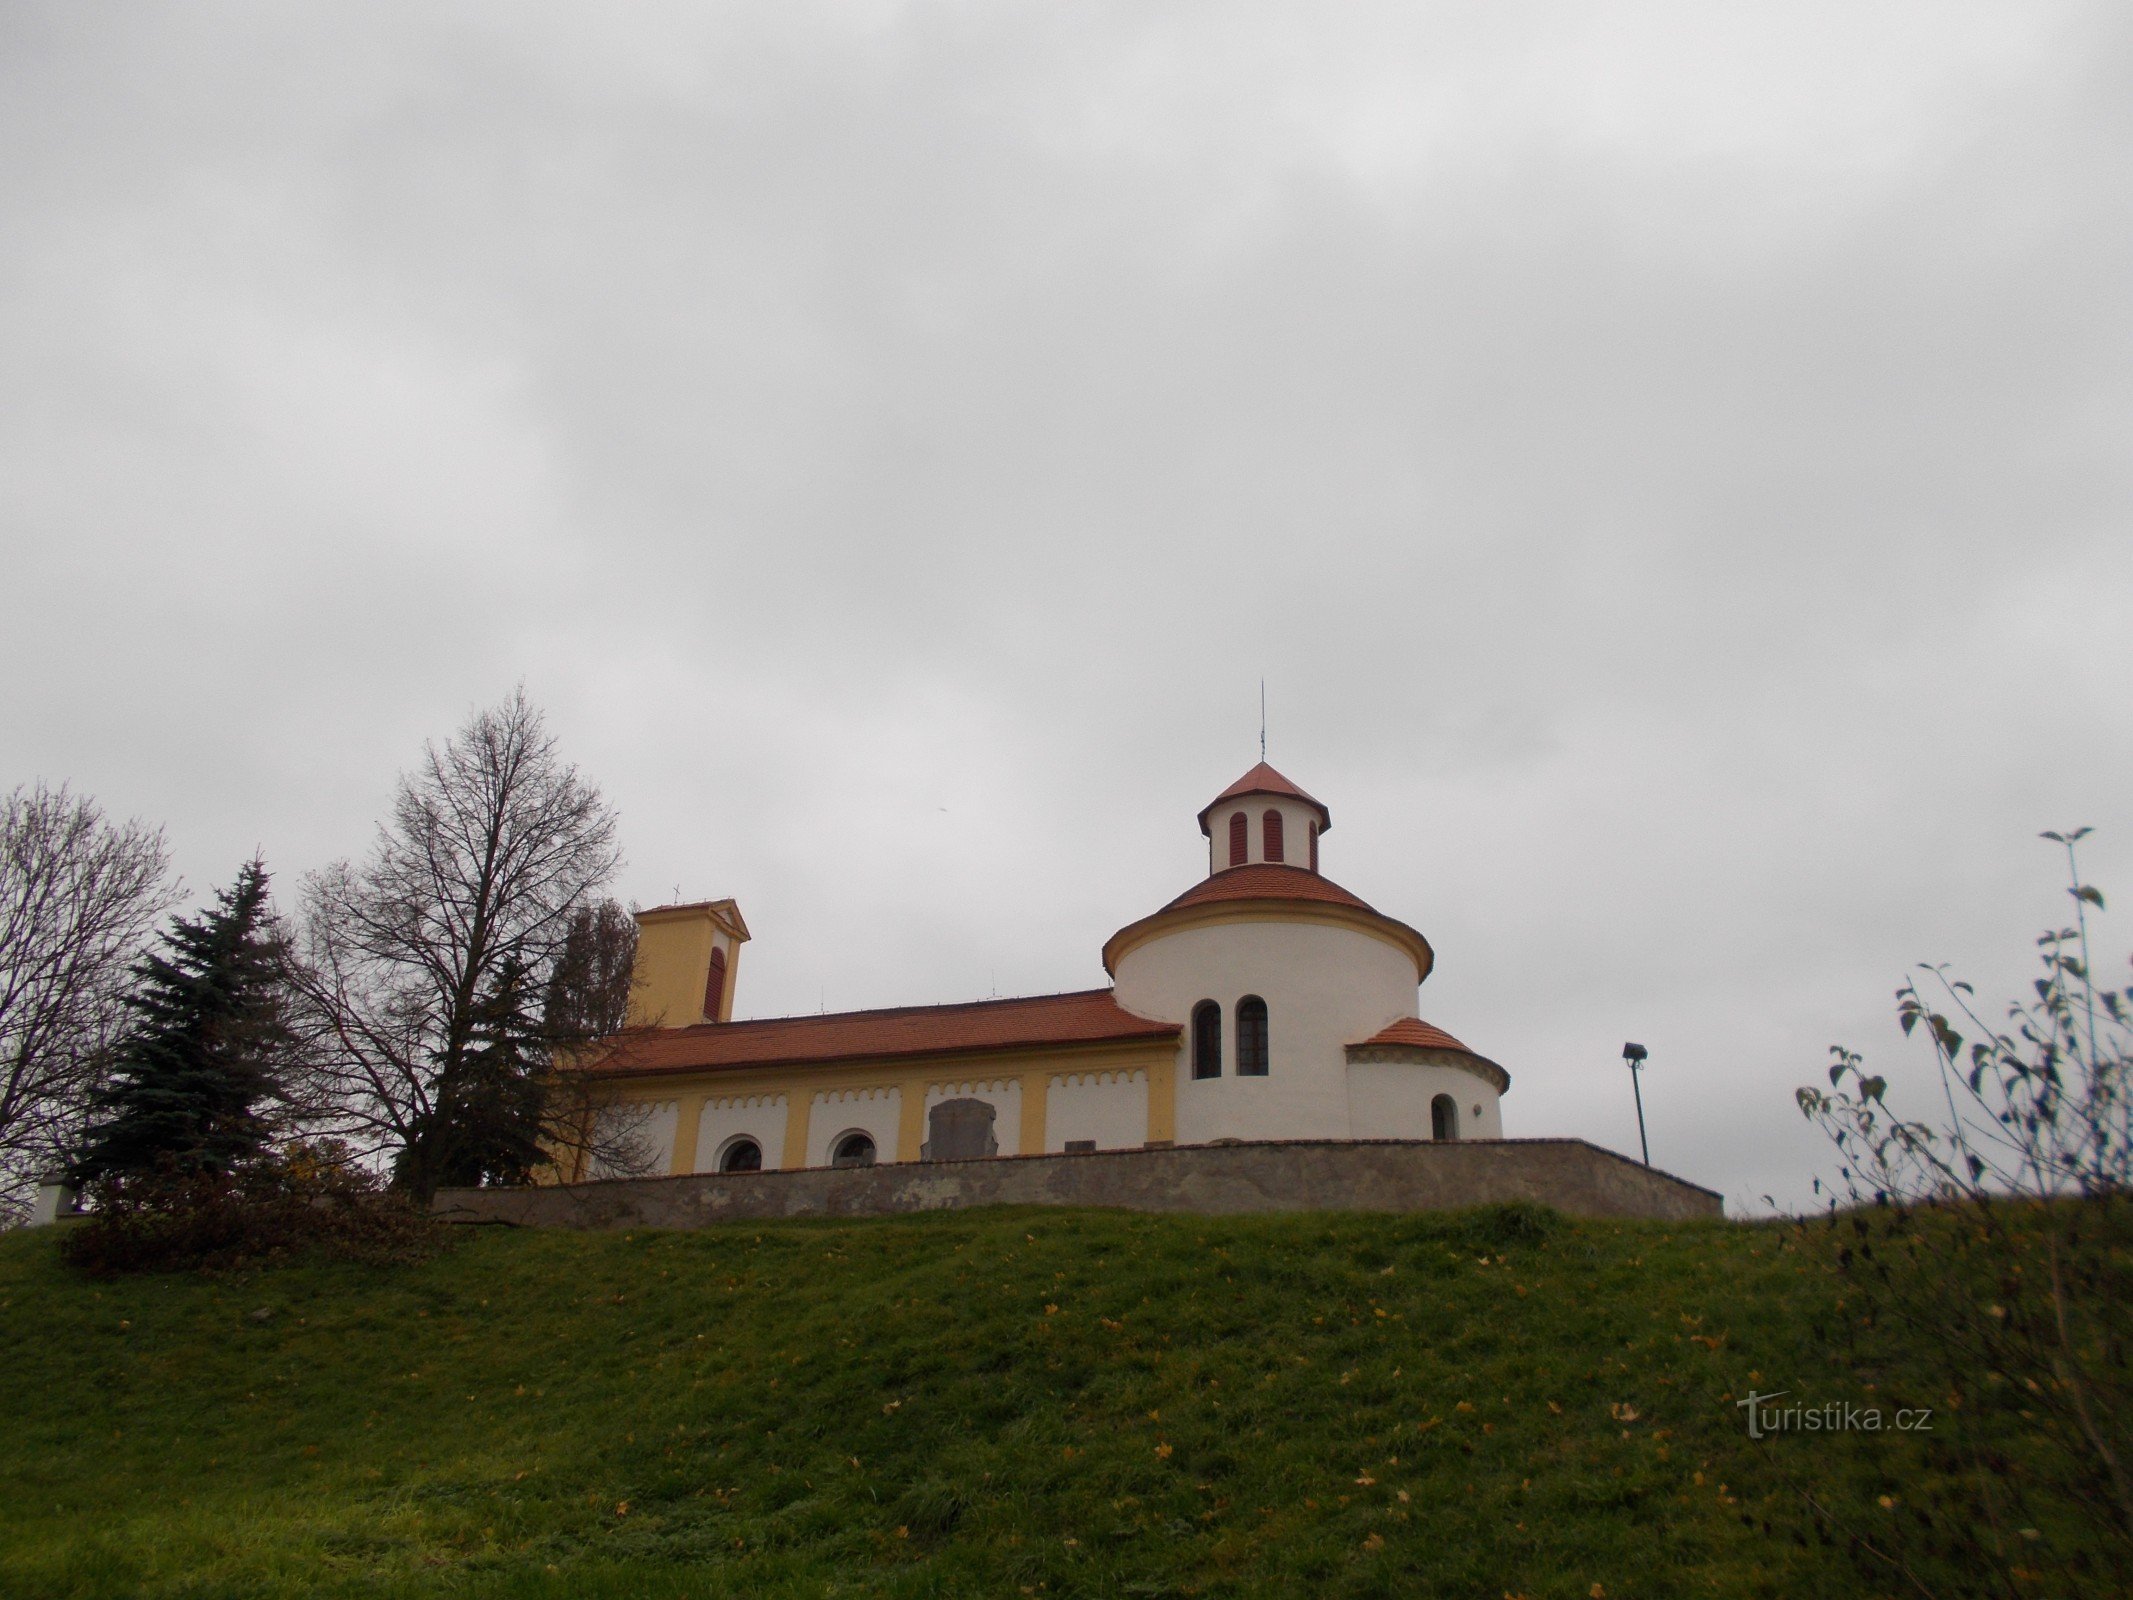 St Peter och Paulus kyrka i Želkovice.